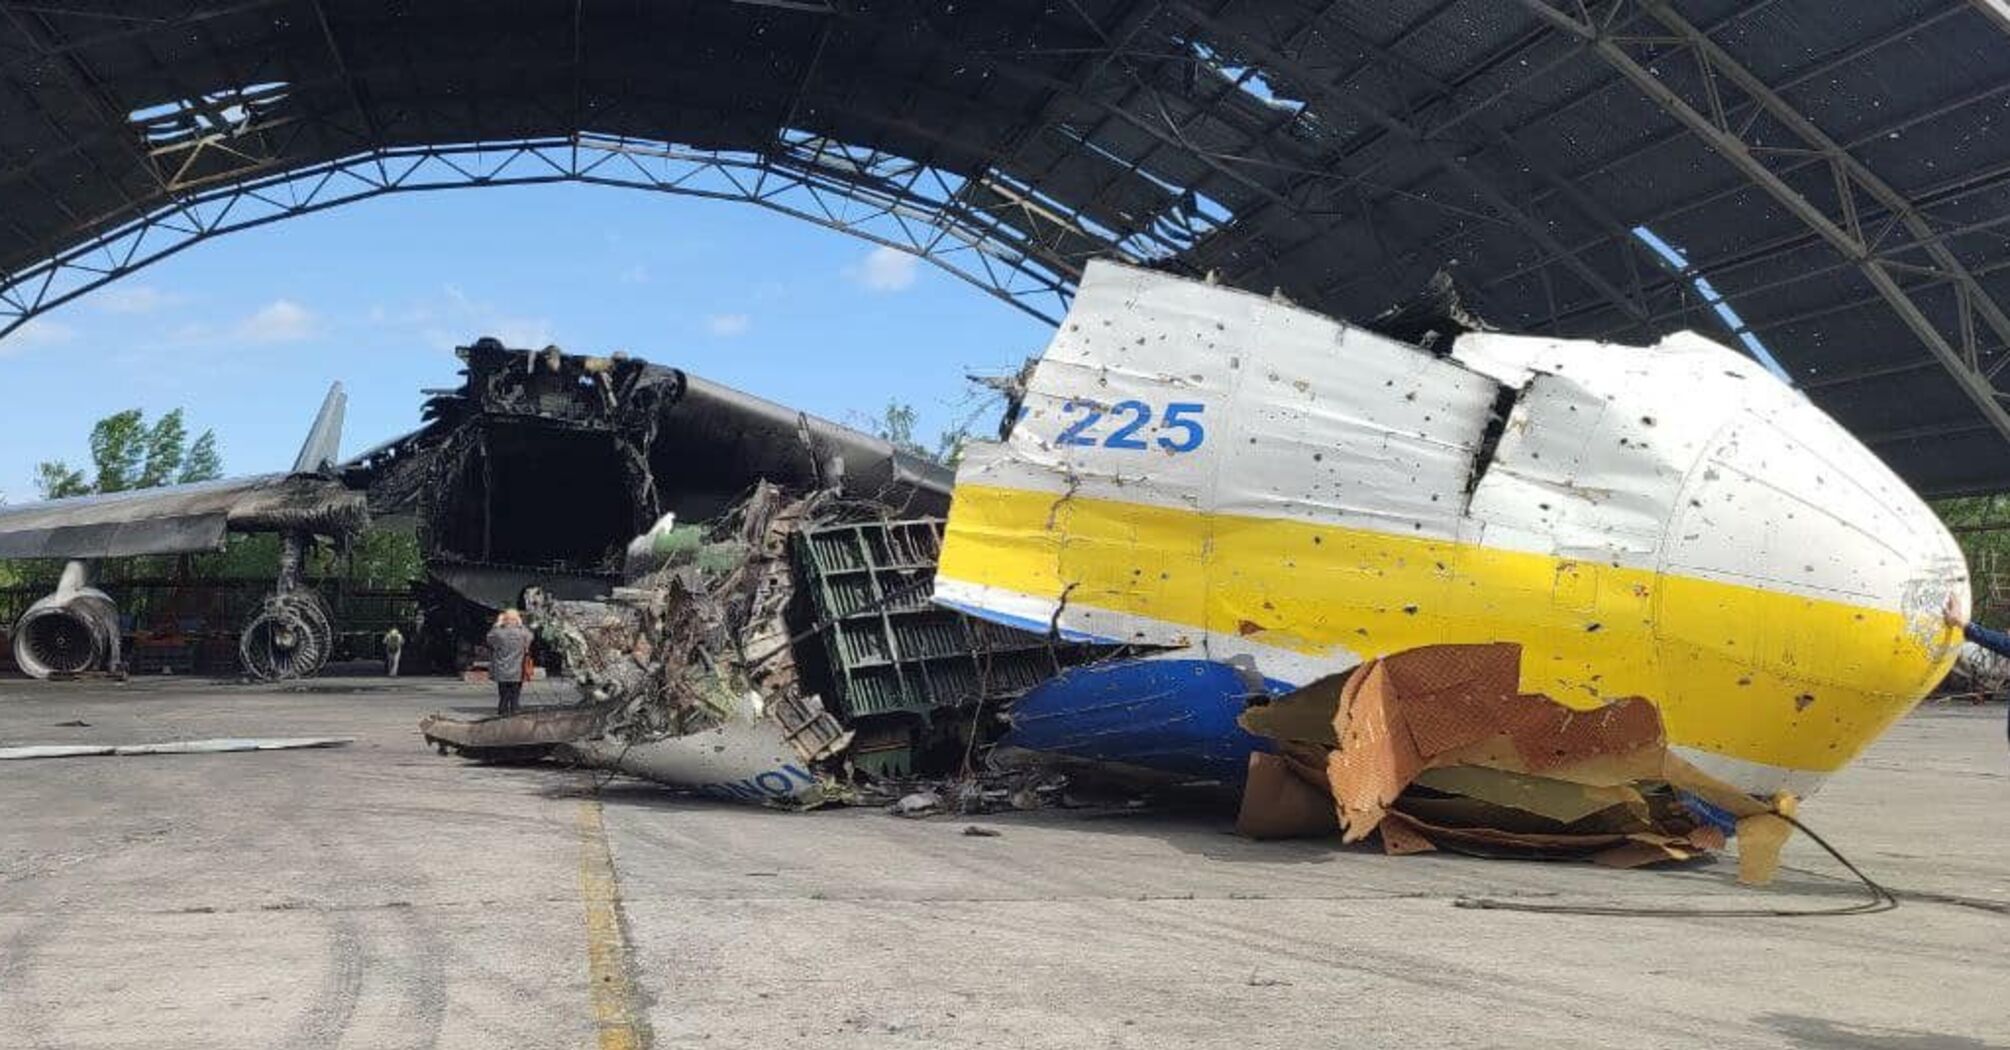 ГП 'Антонов' опроверг информацию про утилизацию легендарного самолета 'Мрия' 